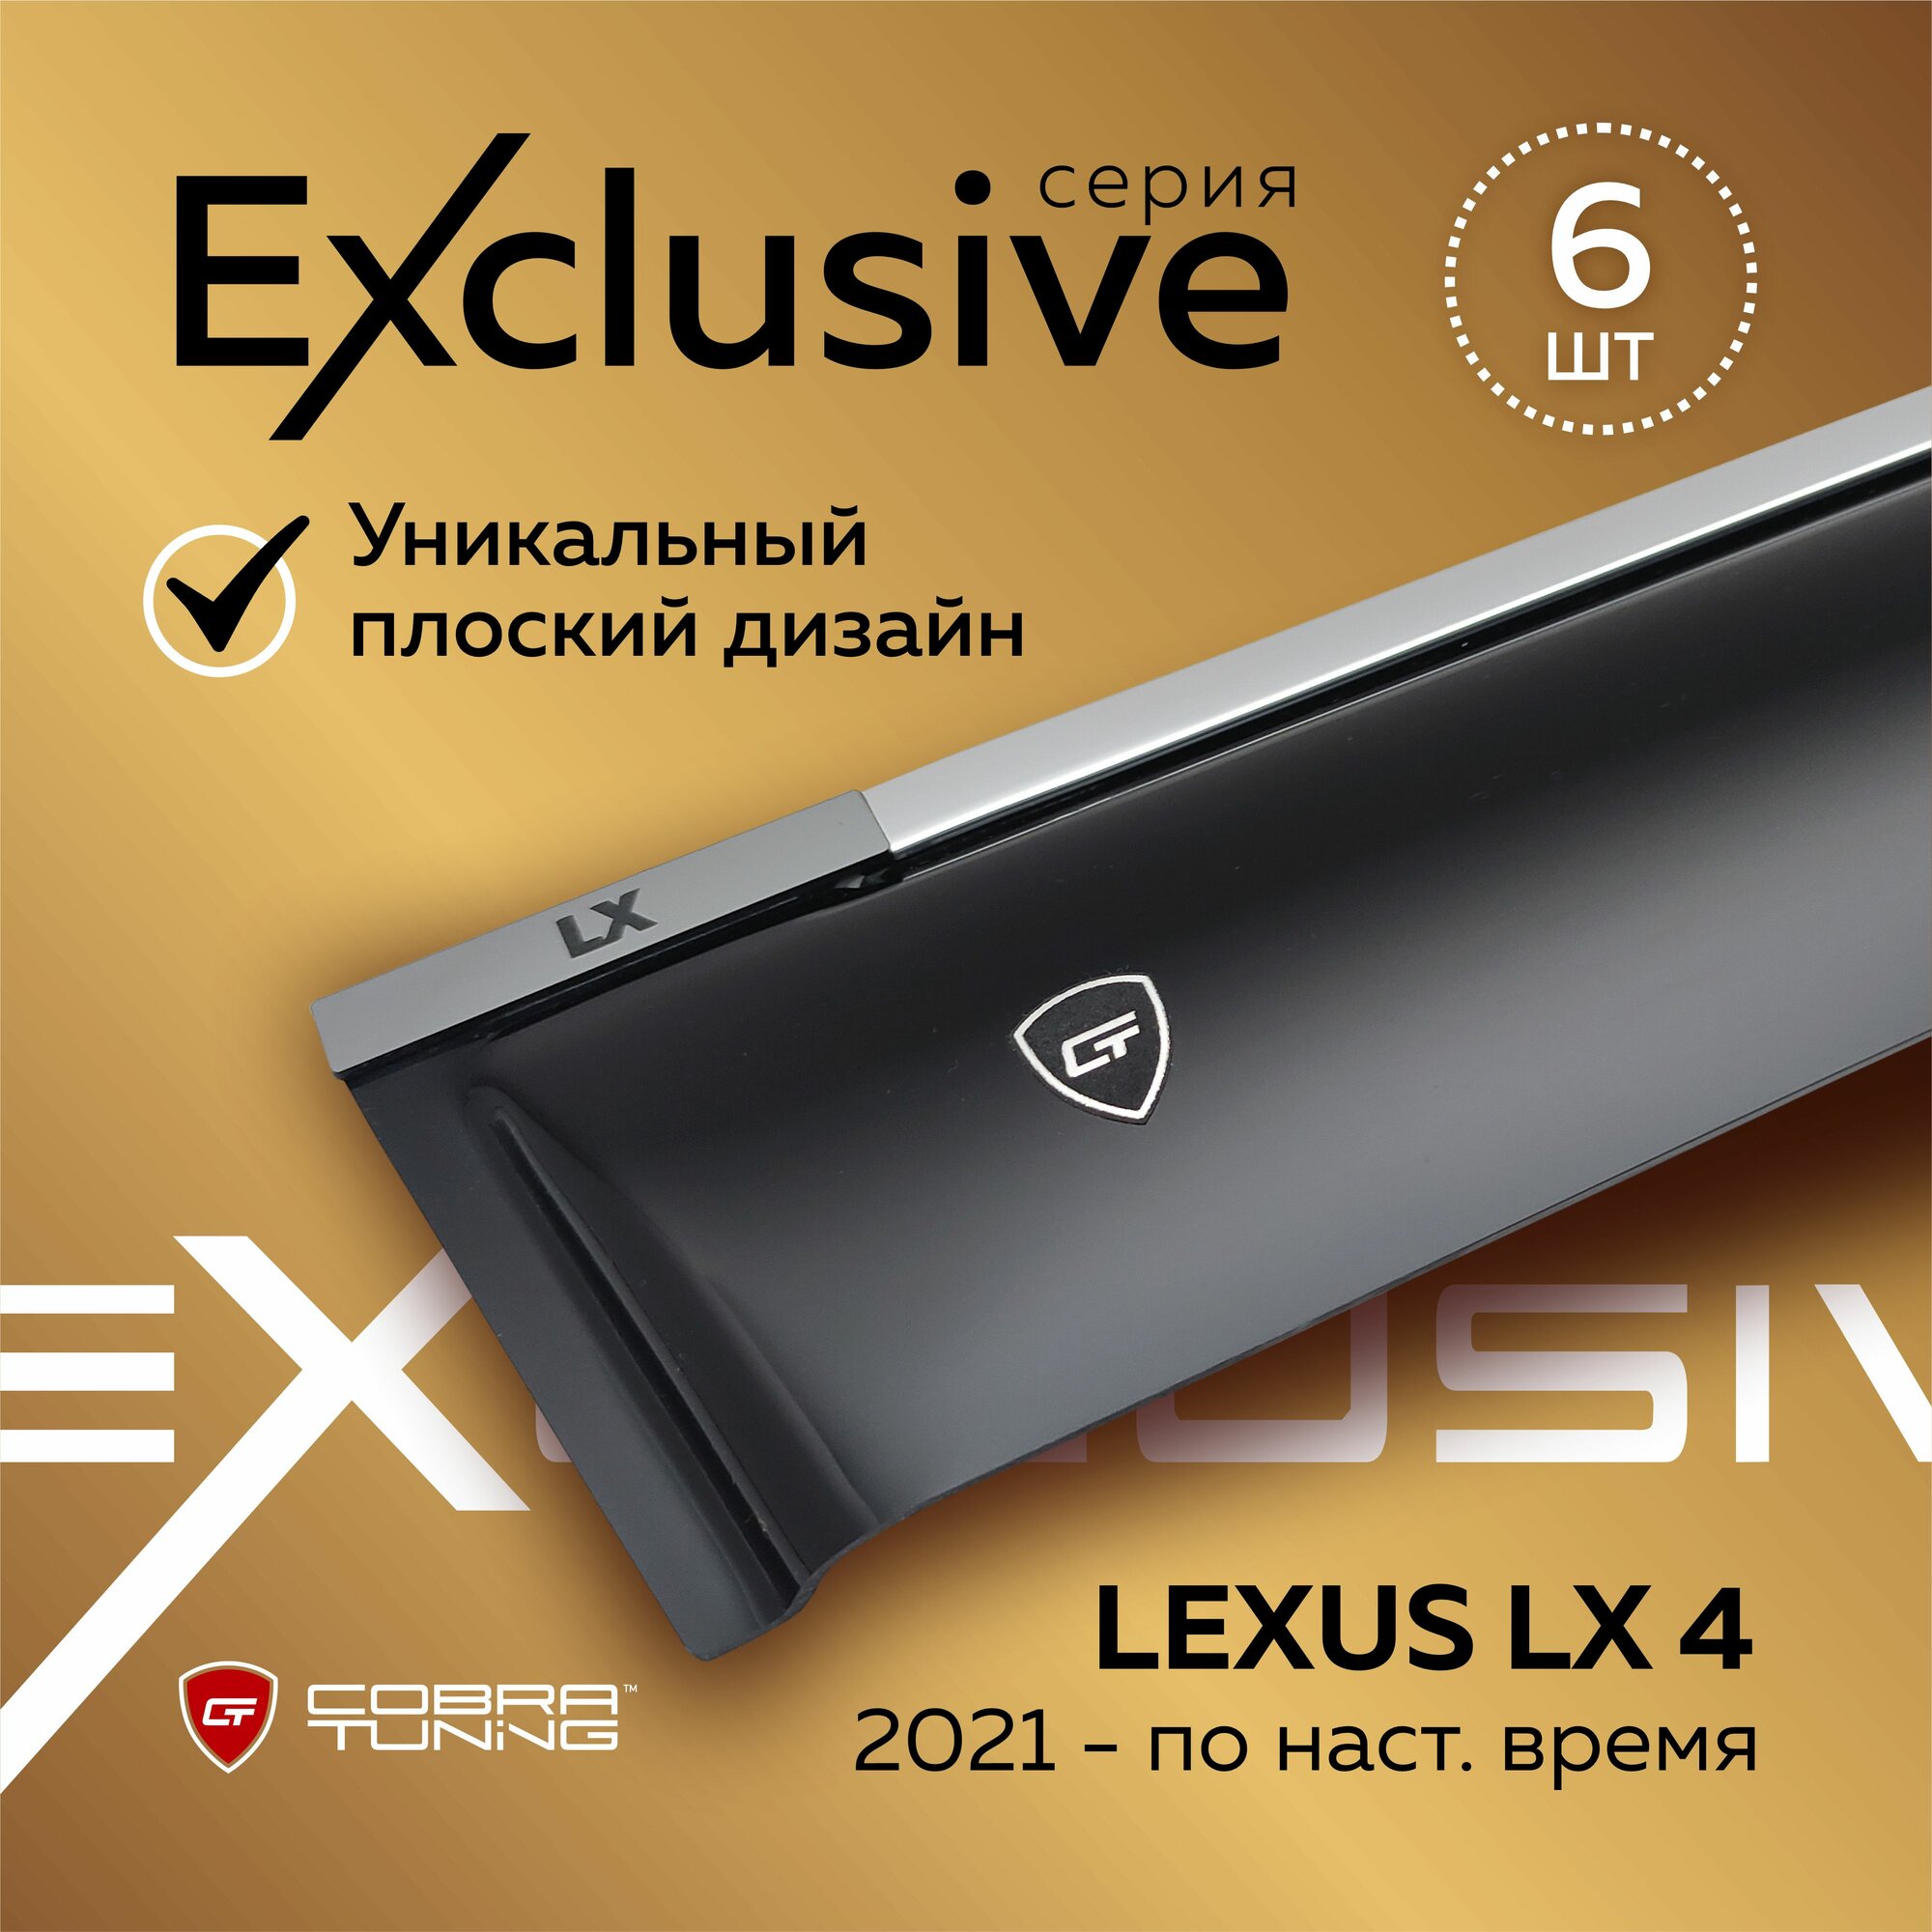 Дефлекторы боковых окон серия "Exclusive" для автомобиля Lexus LX 4 поколение (Лексус Лх) 2021, 2022, 2023 ветровики с хром молдингом, полный комплект с уголками, 6 частей, Cobra Tuning